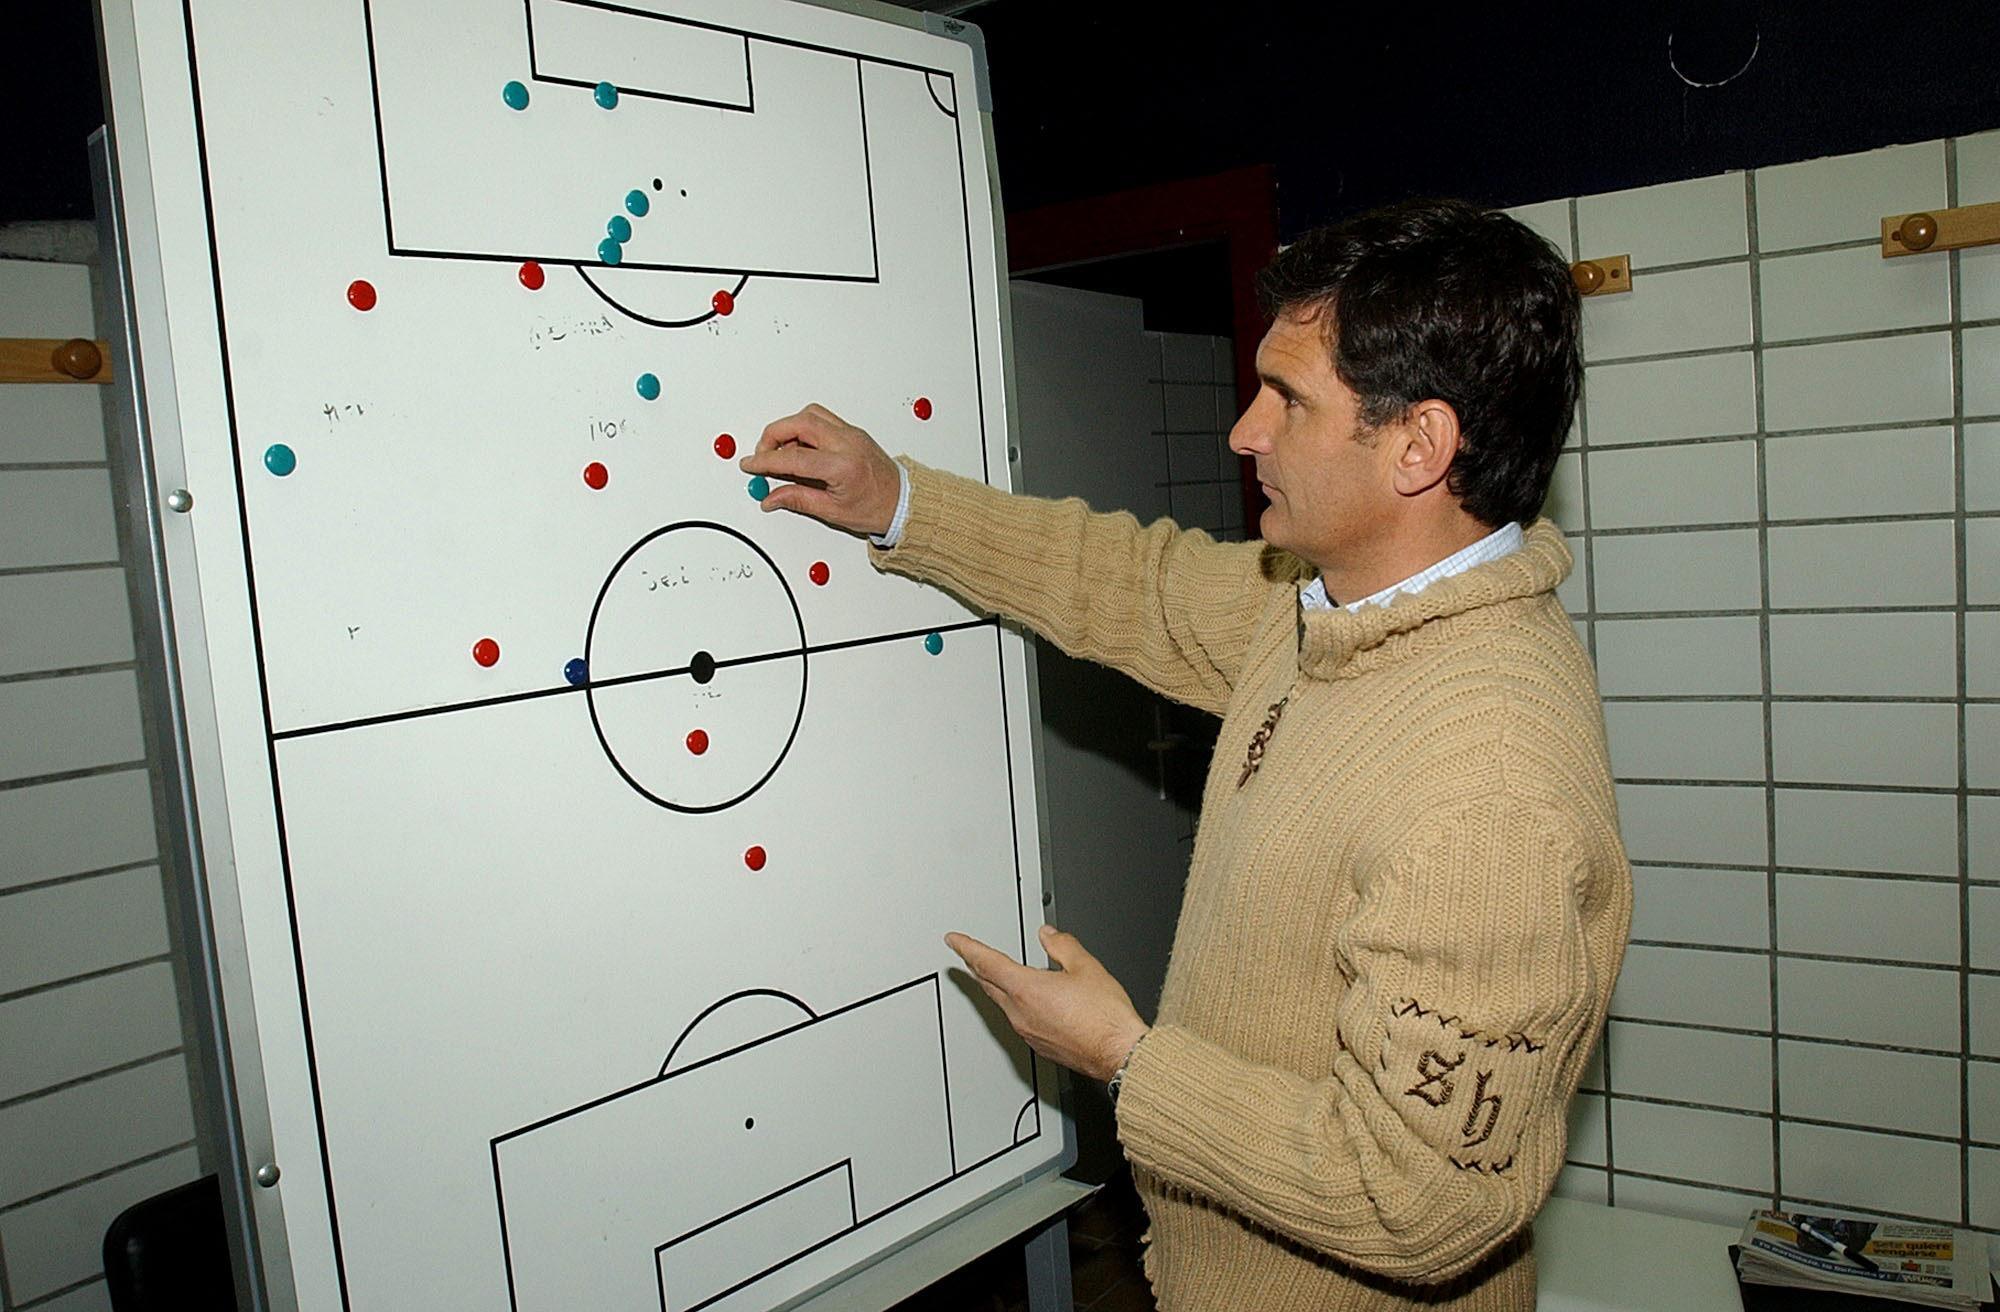 El entrenador ha defendido siempre un fútbol basado en la intensidad, el ritmo, el centro y el remate